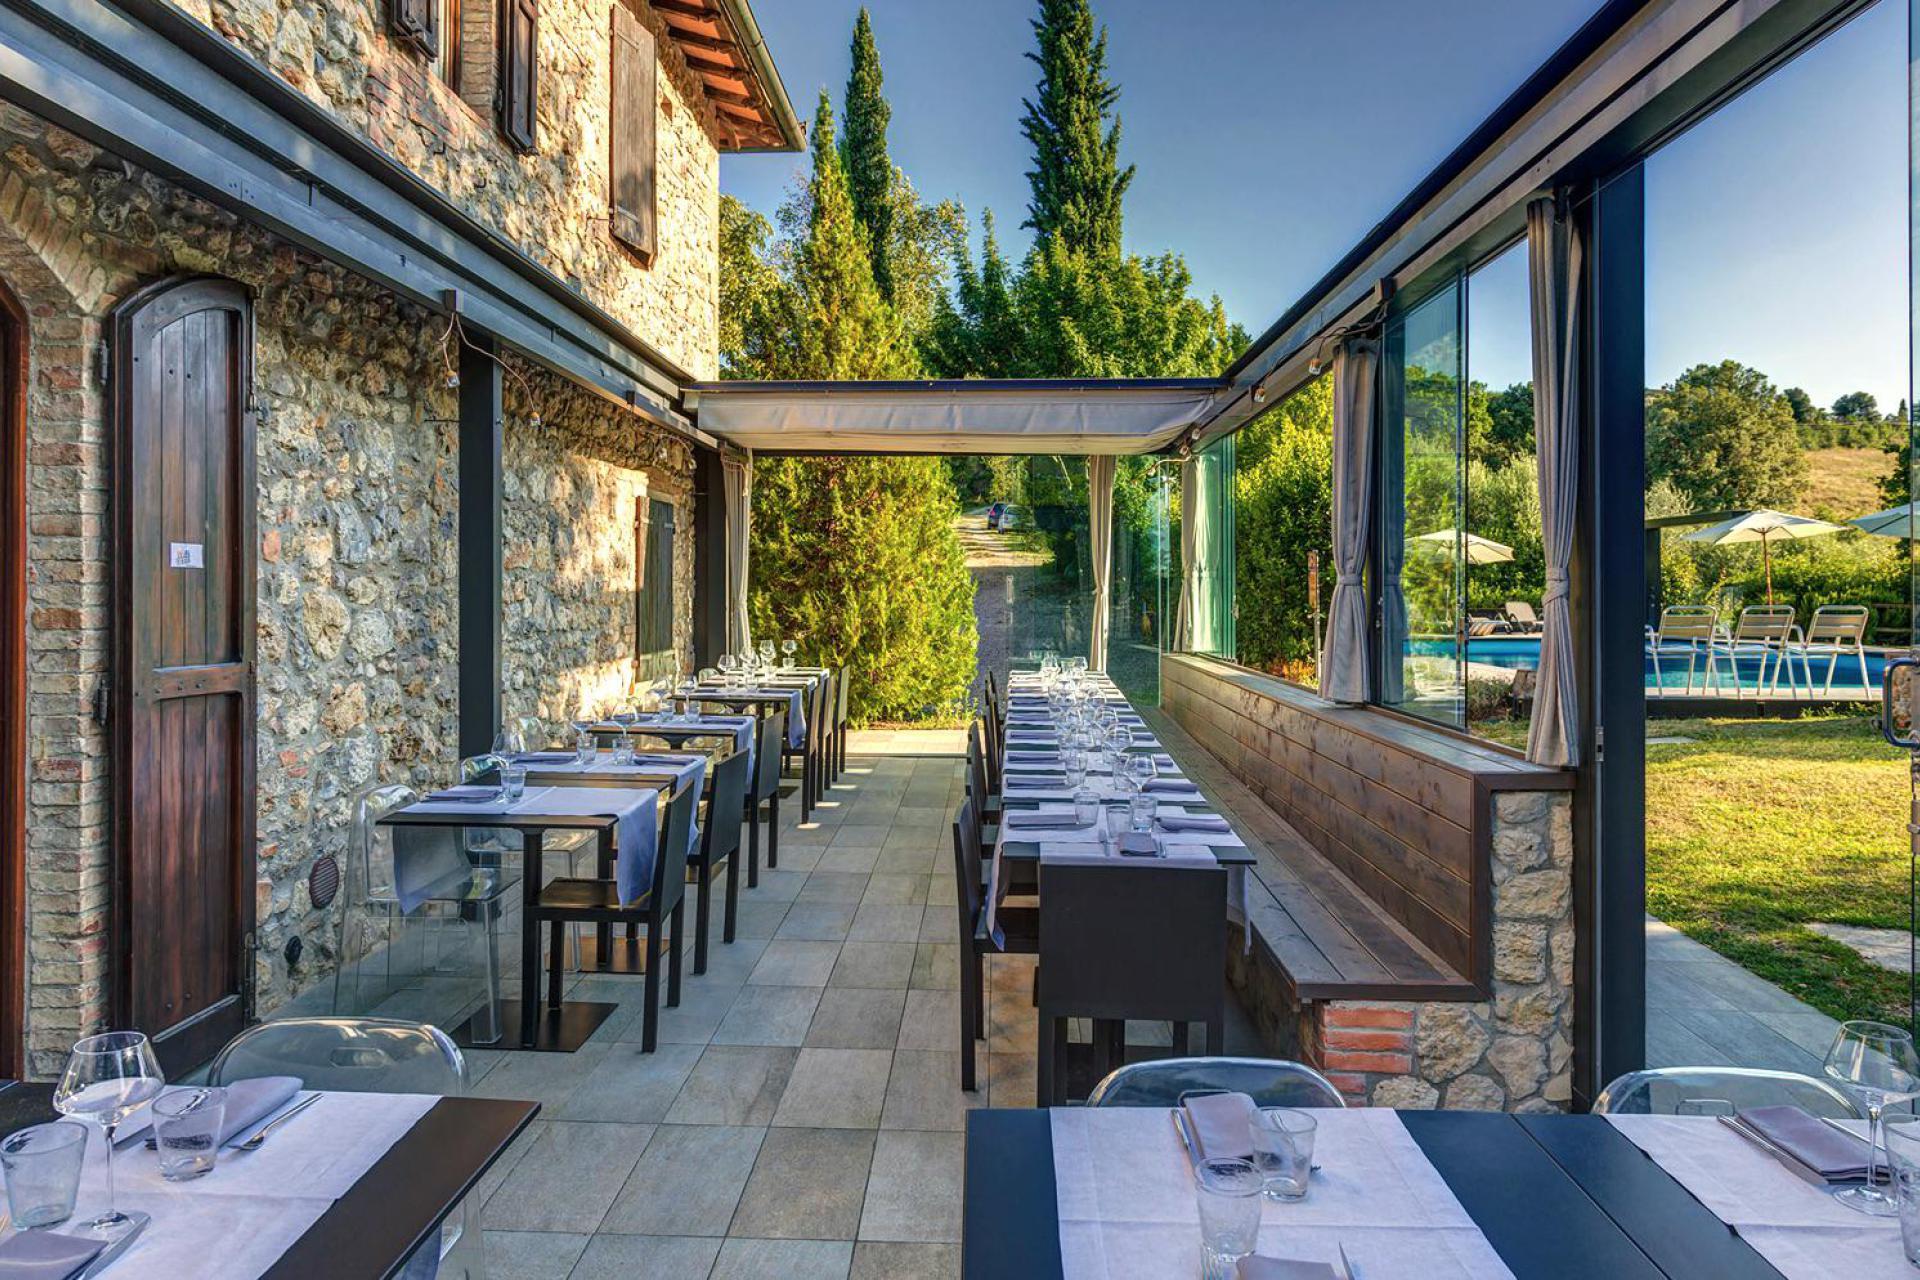 Agriturismo with restaurant near San Gimignano